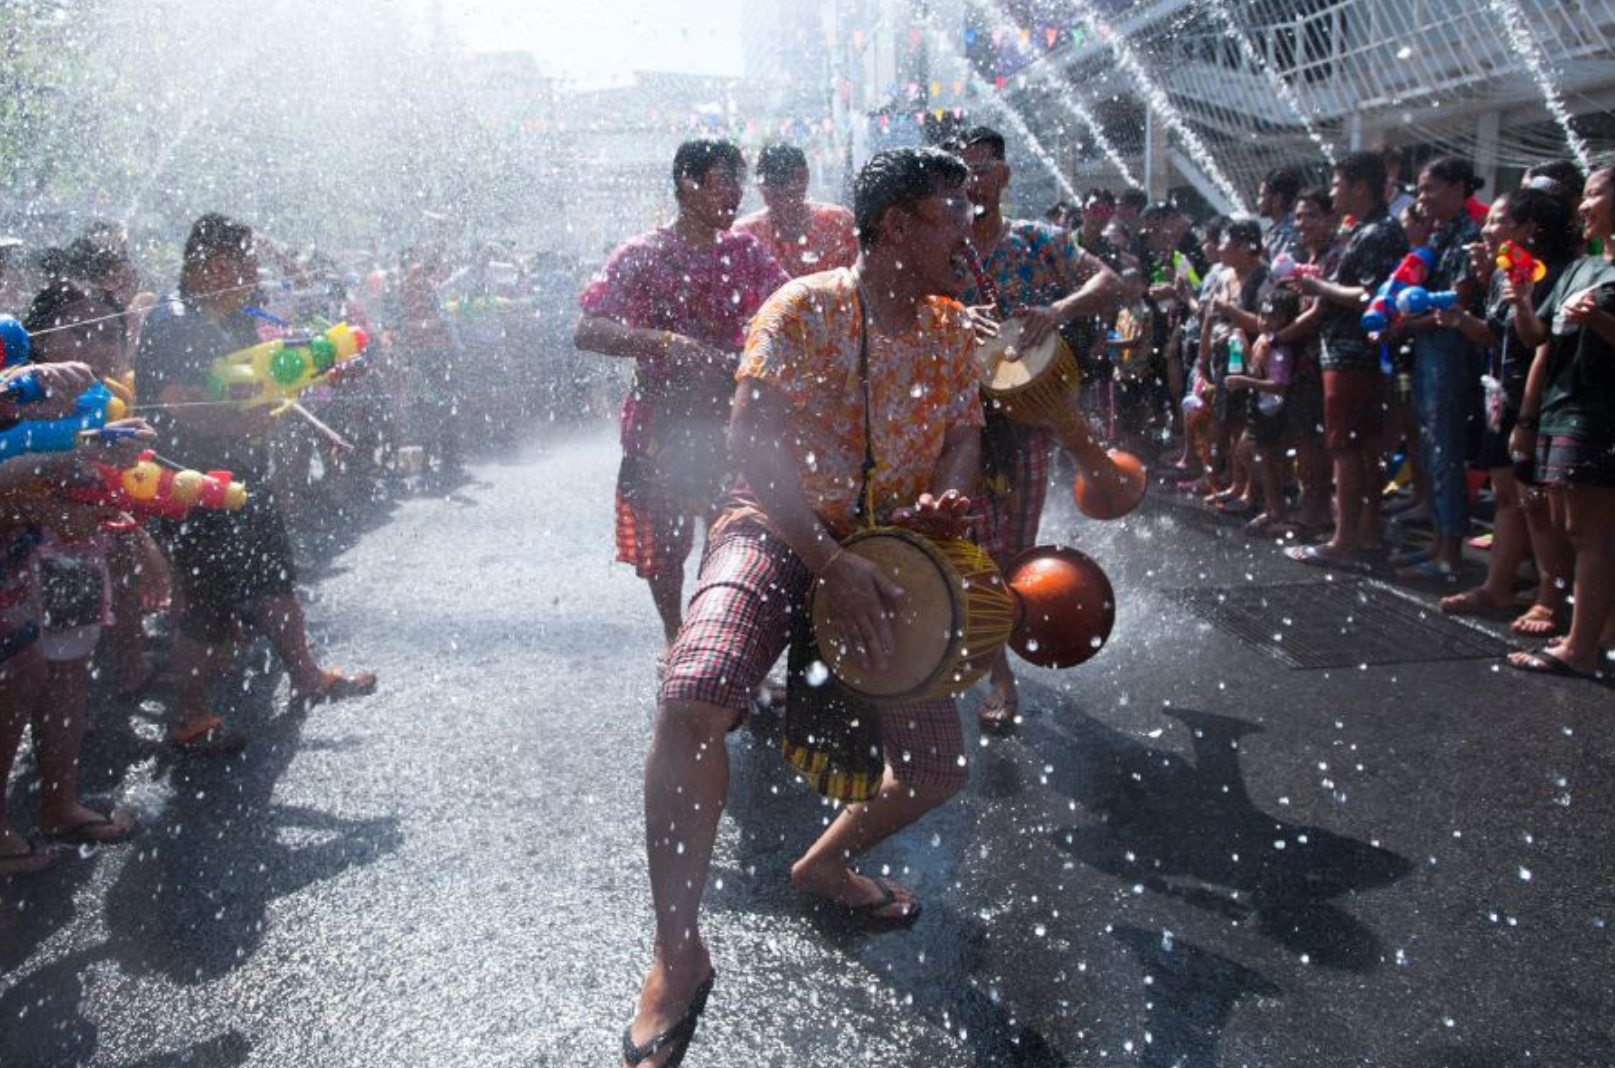 Những điều thú vị về lễ hội té nước Songkran